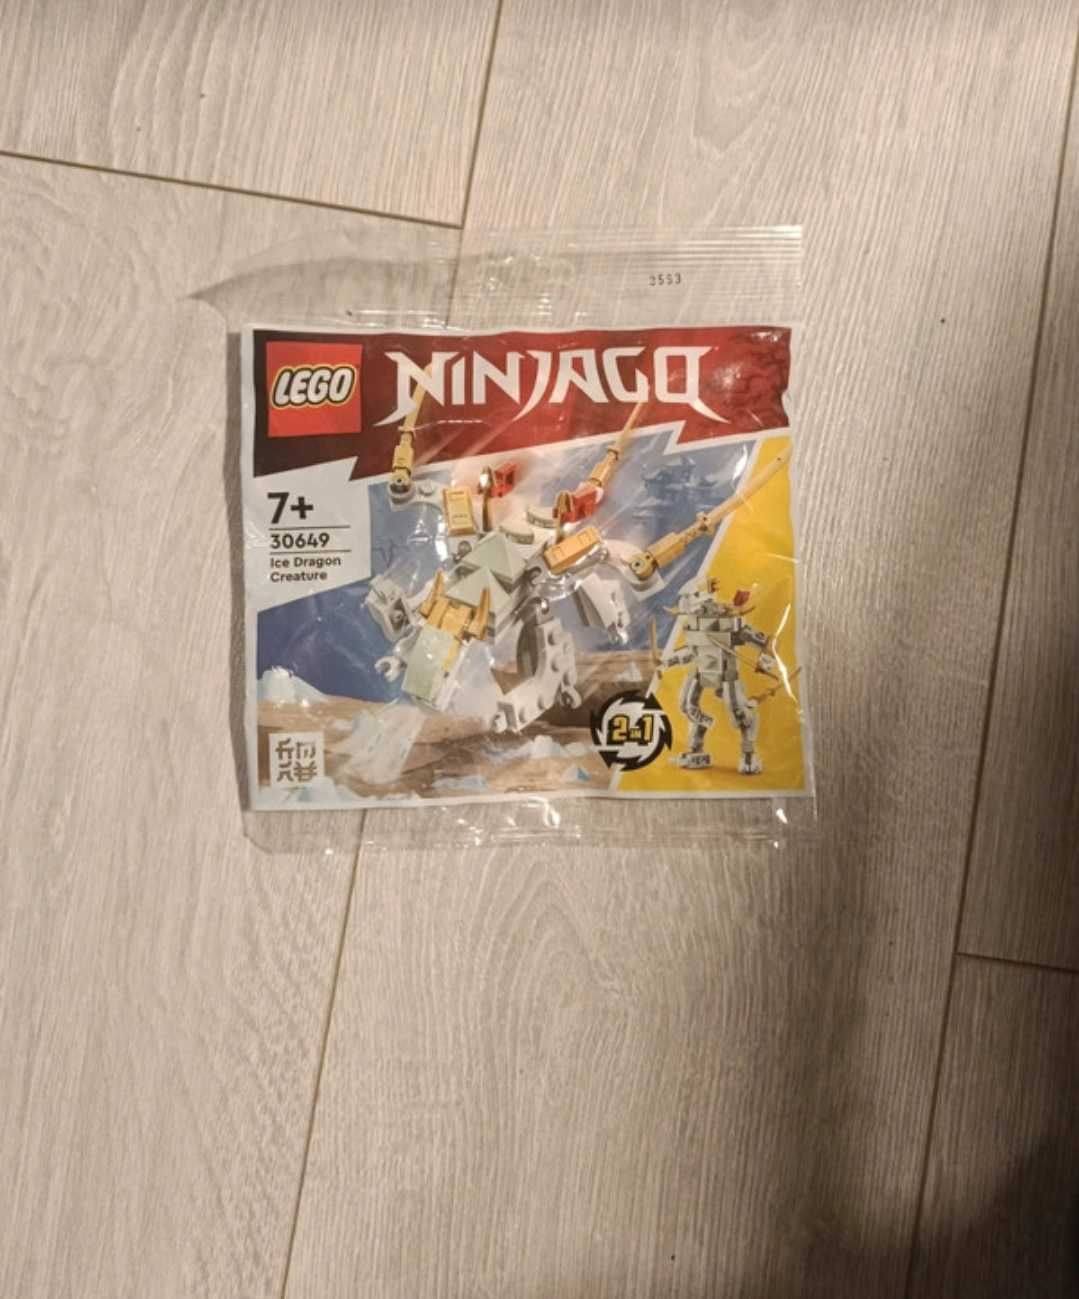 LEGO ninjago 30649 polybag